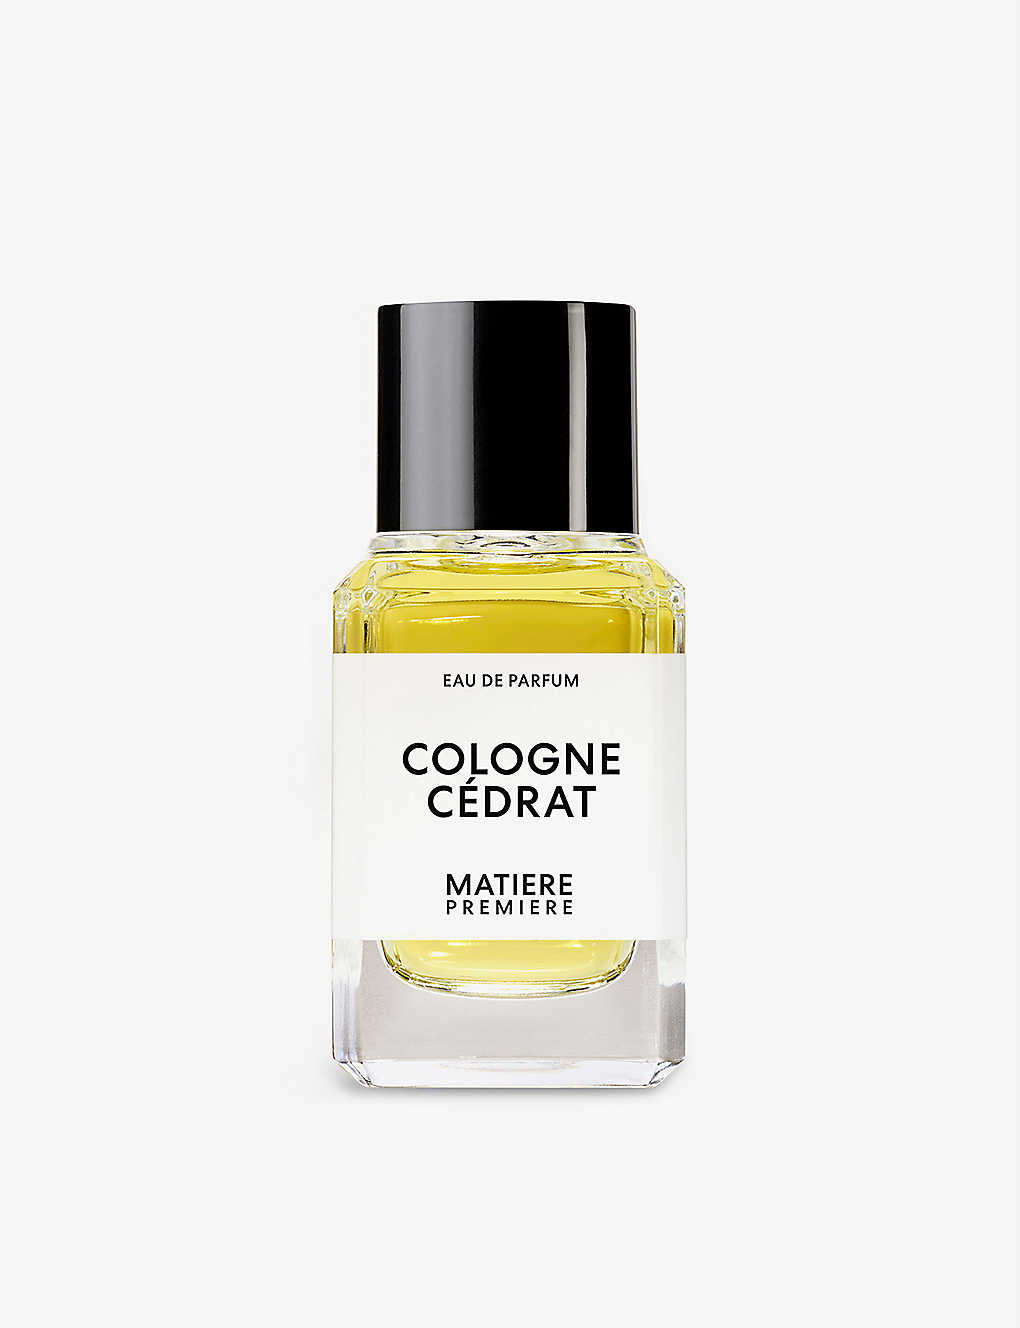 Matiere Premiere Cologne Cedrat Eau De Parfum